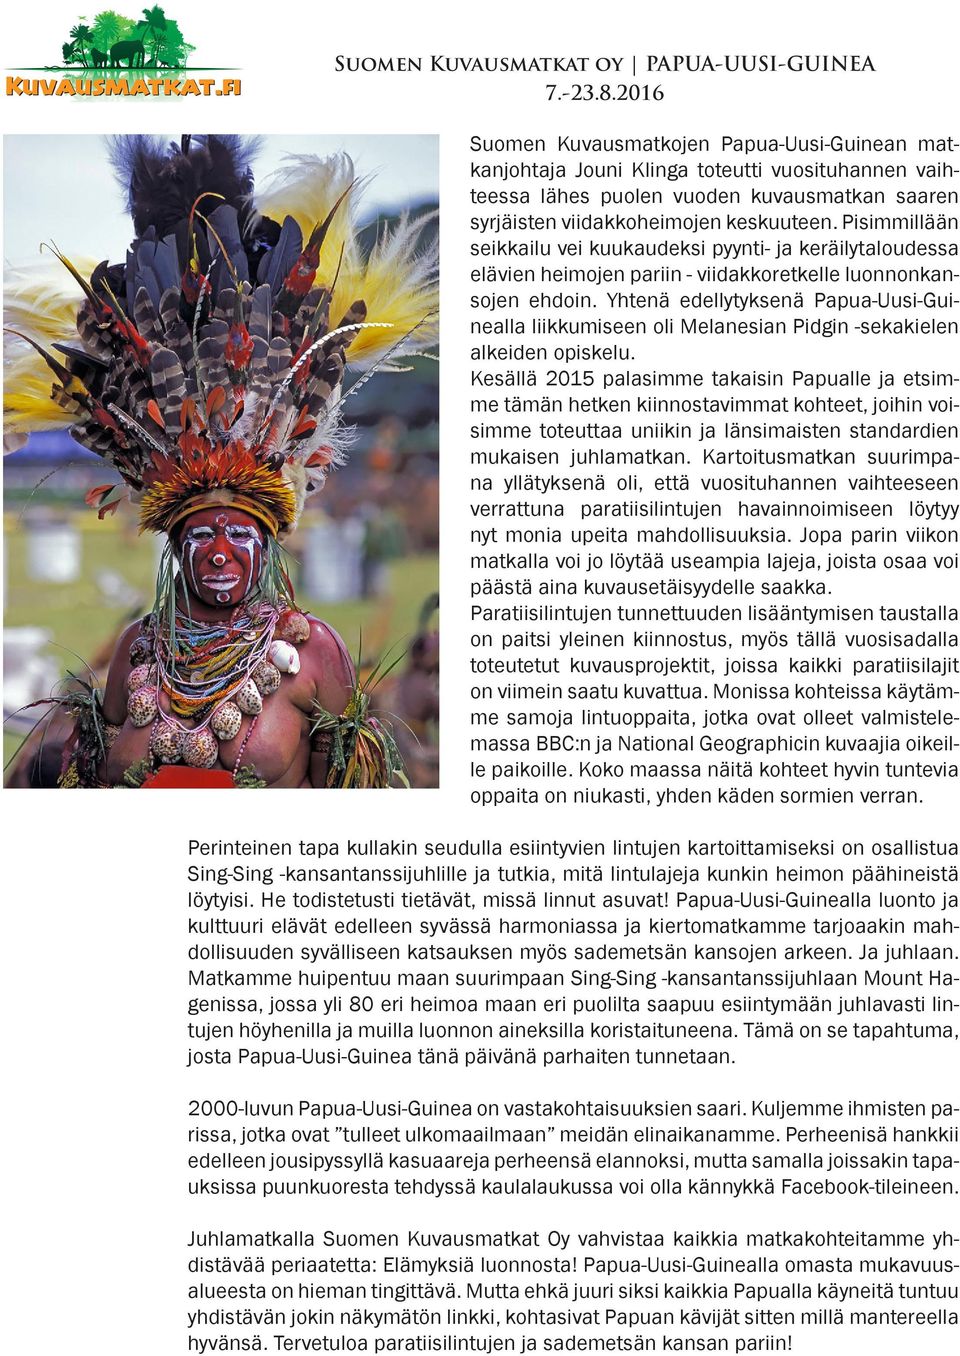 Yhtenä edellytyksenä Papua-Uusi-Guinealla liikkumiseen oli Melanesian Pidgin -sekakielen alkeiden opiskelu.